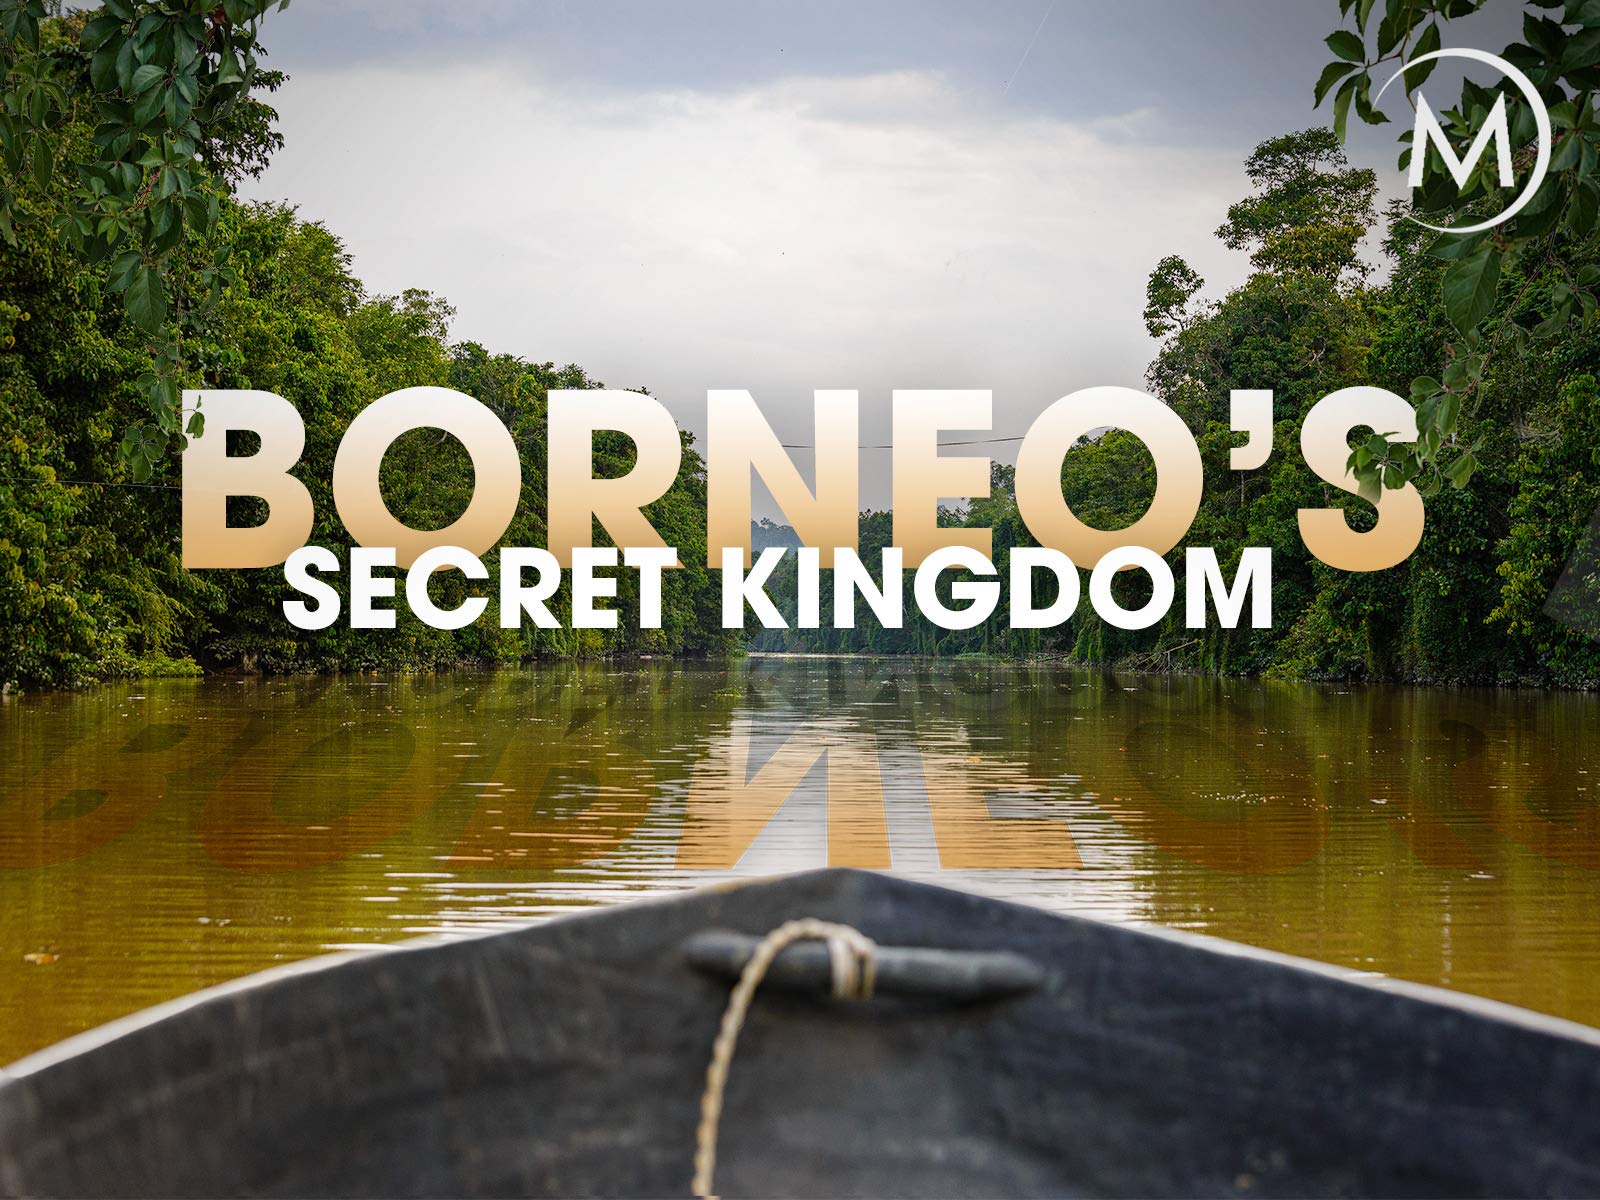 Borneo's Secret Kingdom